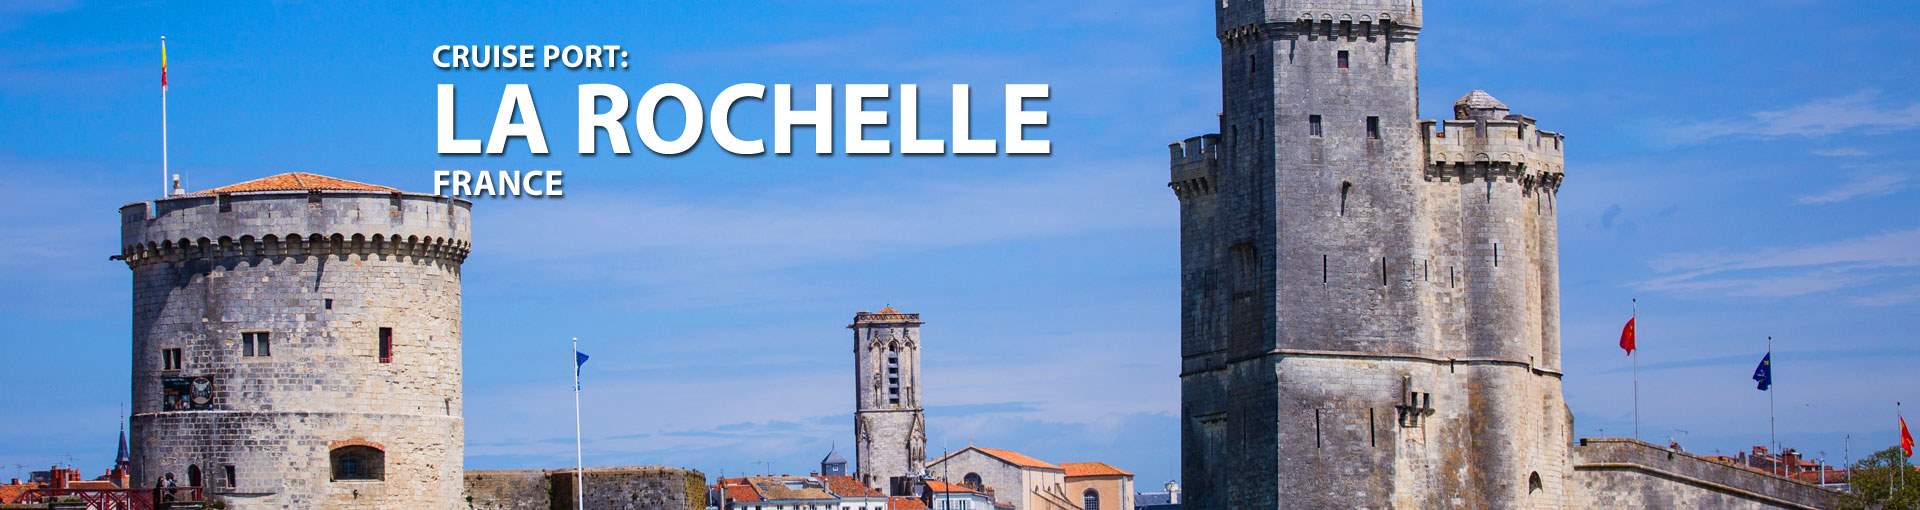 La Rochelle, France Cruise Port, 2019, 2020 and 2021 Cruises to La